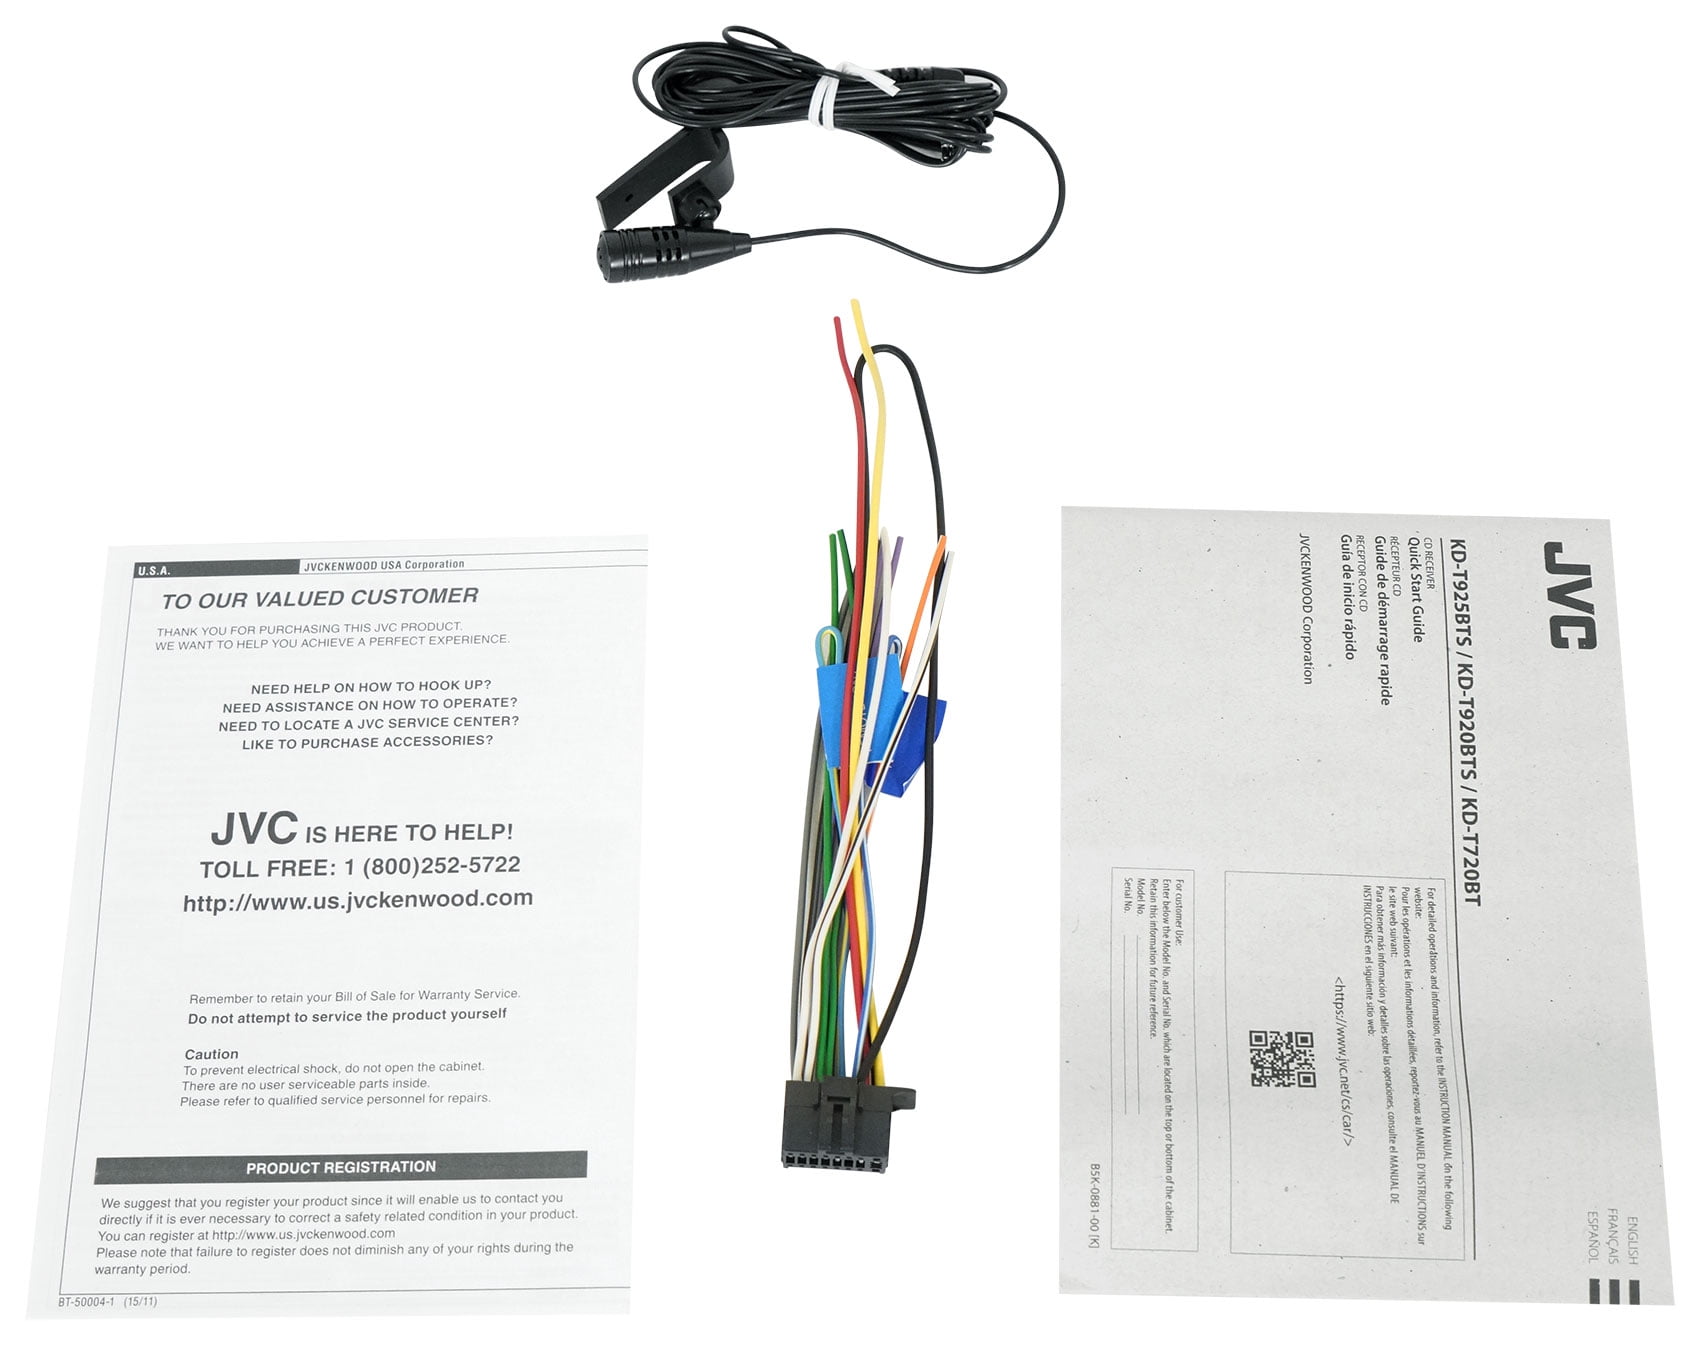 JVC KD-DB922BT 1-DIN Autoradio mit DAB+ / Bluetooth /  Alexa